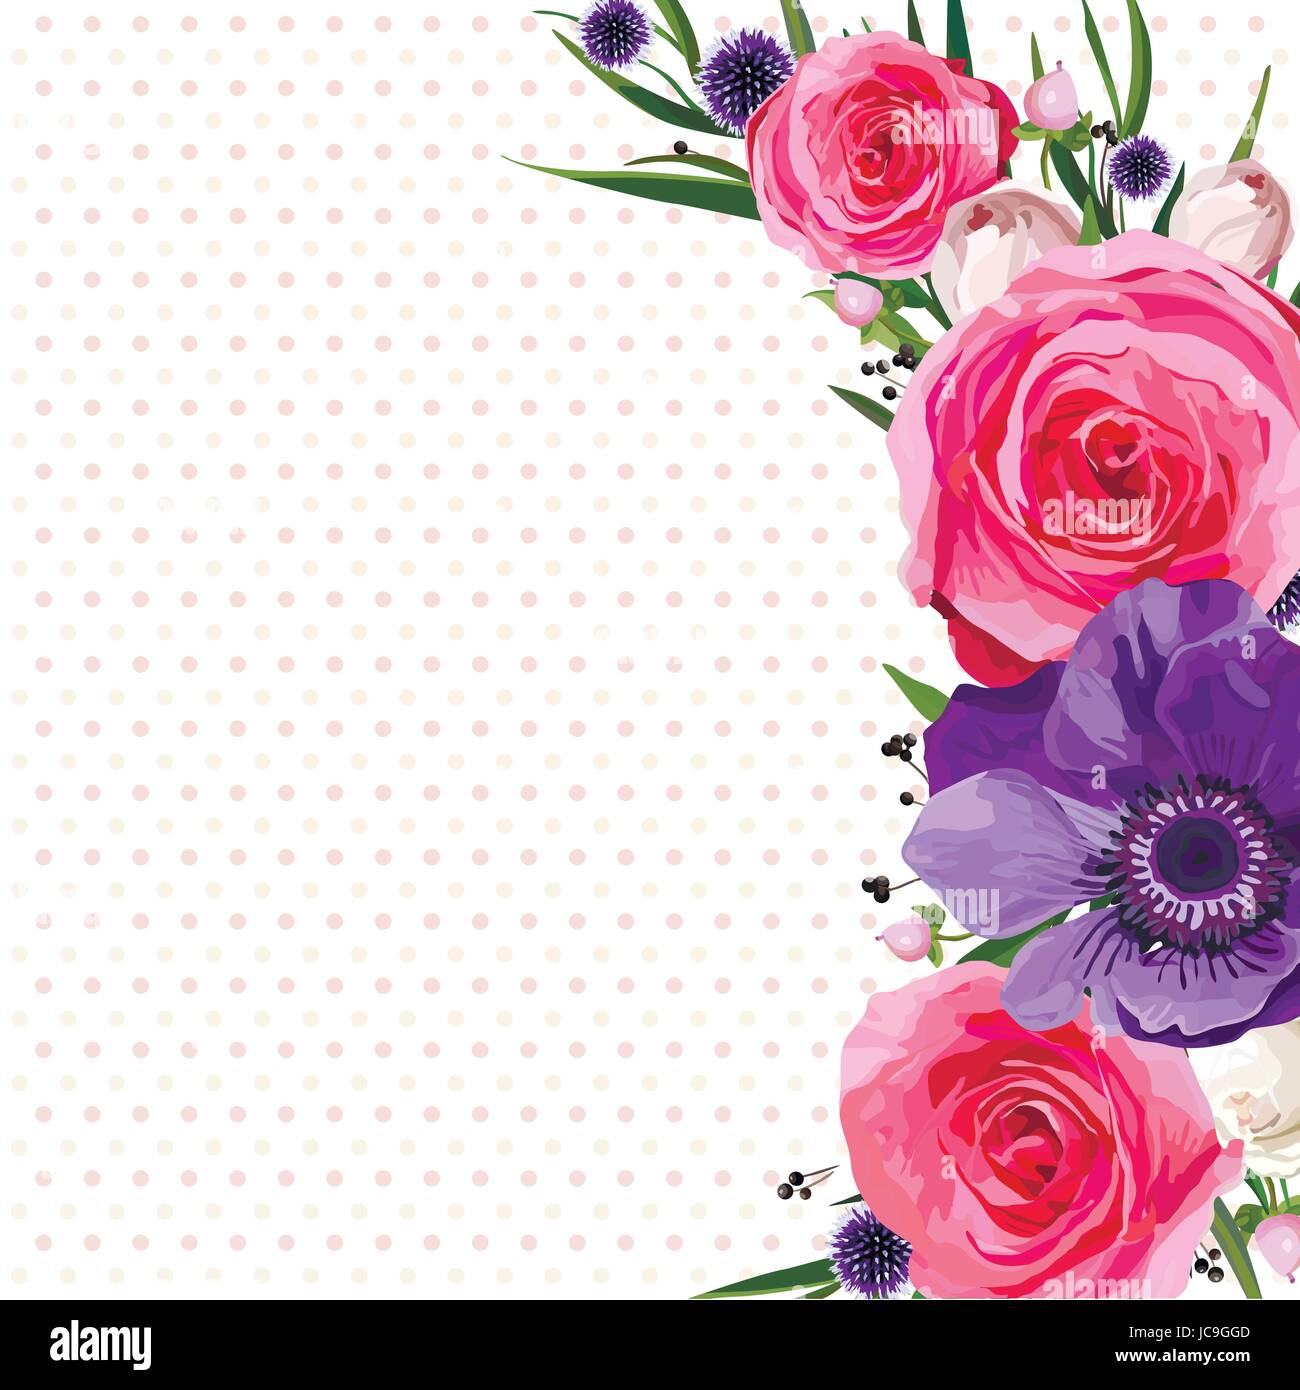 Blume Blumen heißen rosa Rose Anemone Distel verlässt Agonis schönen schönen Frühling Sommer Bouquet Vektor-Illustration. Ansicht von oben eckig elegante w Stock Vektor